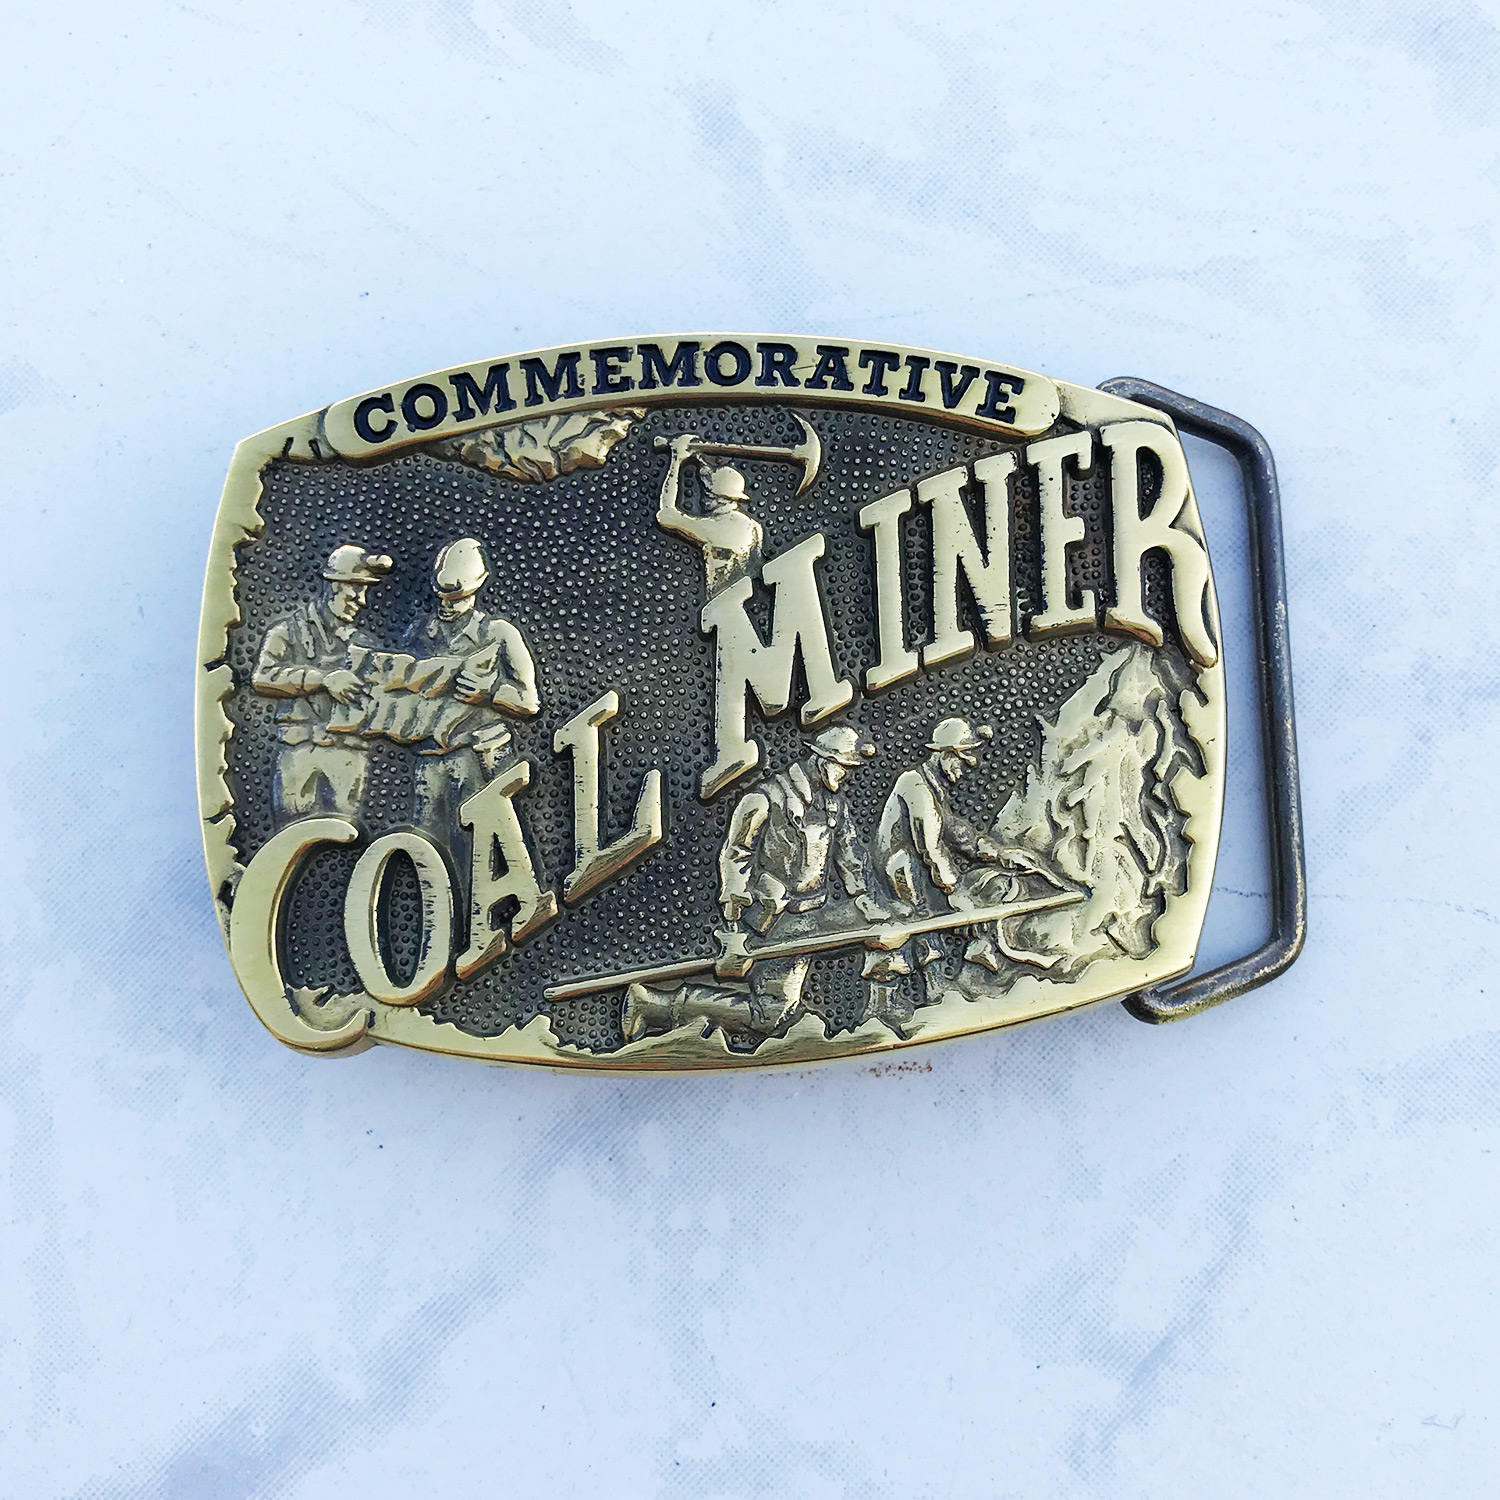 Vintage Men's Belt Buckle Coal Miner Commemorative Solid | Etsy